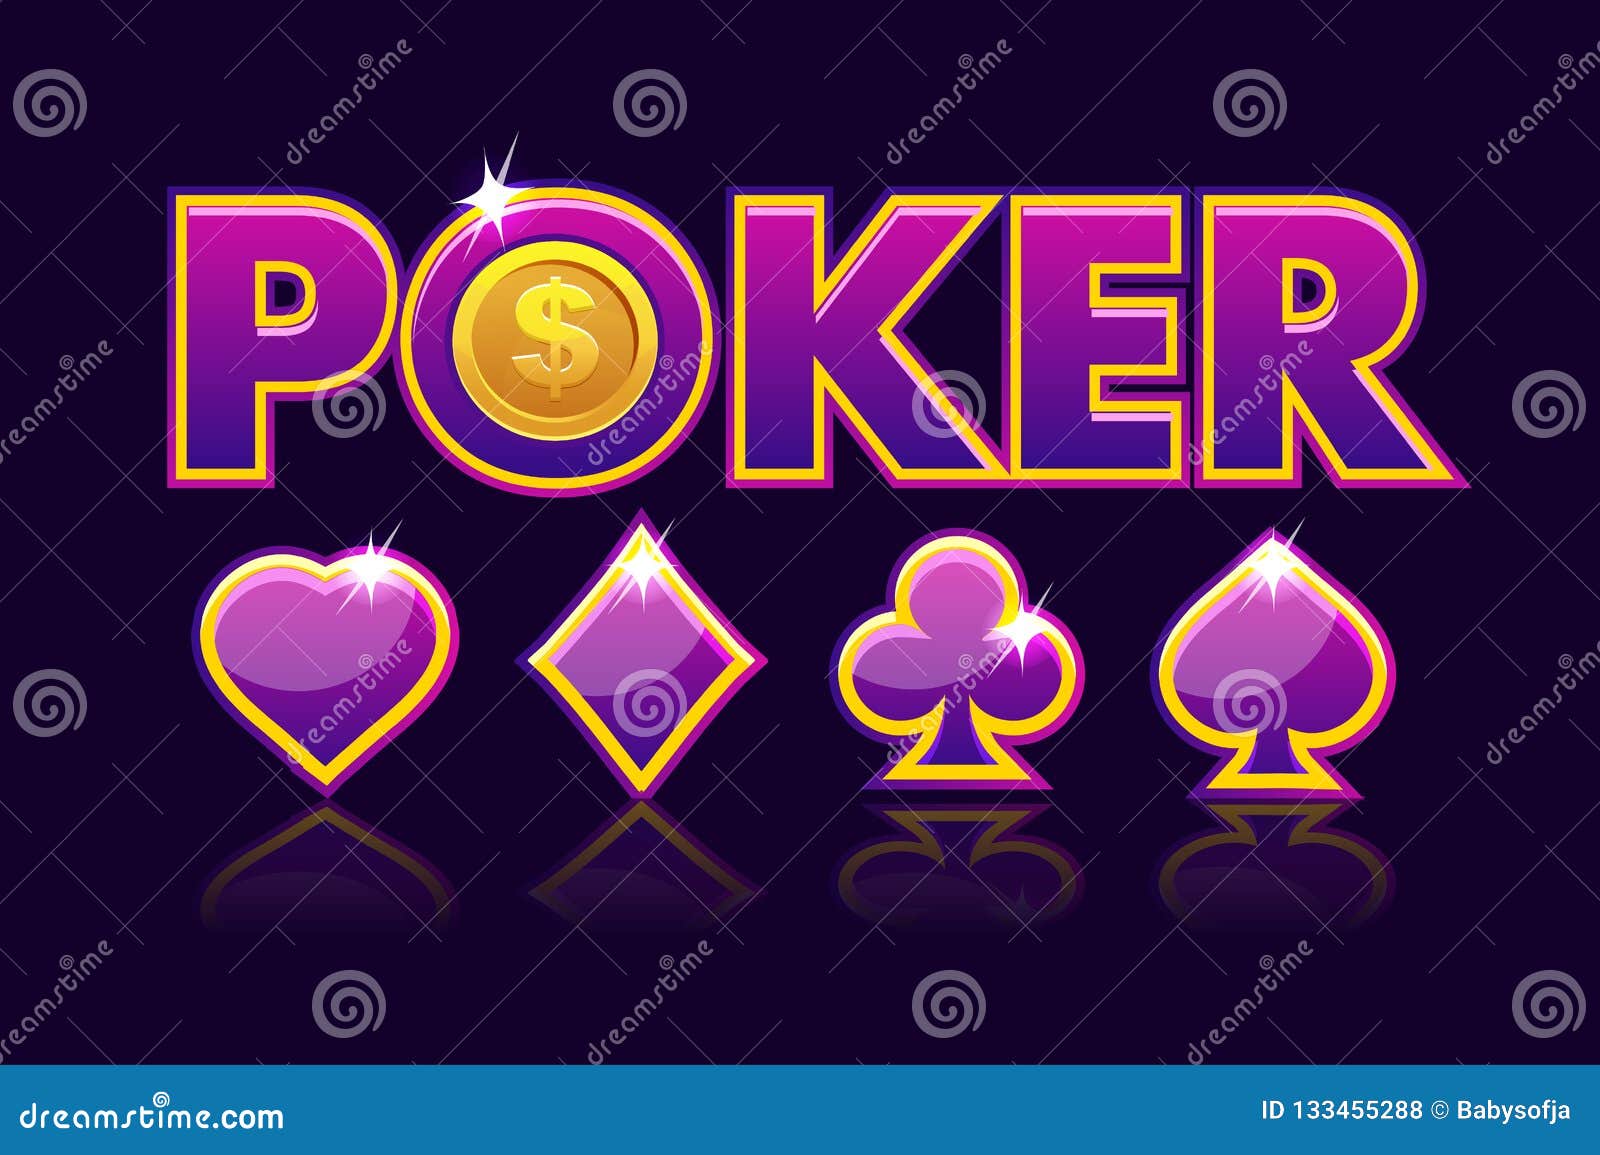 Nền đen trò chơi poker - Trò chơi Poker đầy quyến rũ sẽ dẫn bạn đến những chỉ số ấn tượng về chiến thuật và sự chân thật. Hãy chiêm ngưỡng những nền đen trò chơi Poker trên màn hình để có được những trải nghiệm tuyệt vời nhất của trò chơi này.